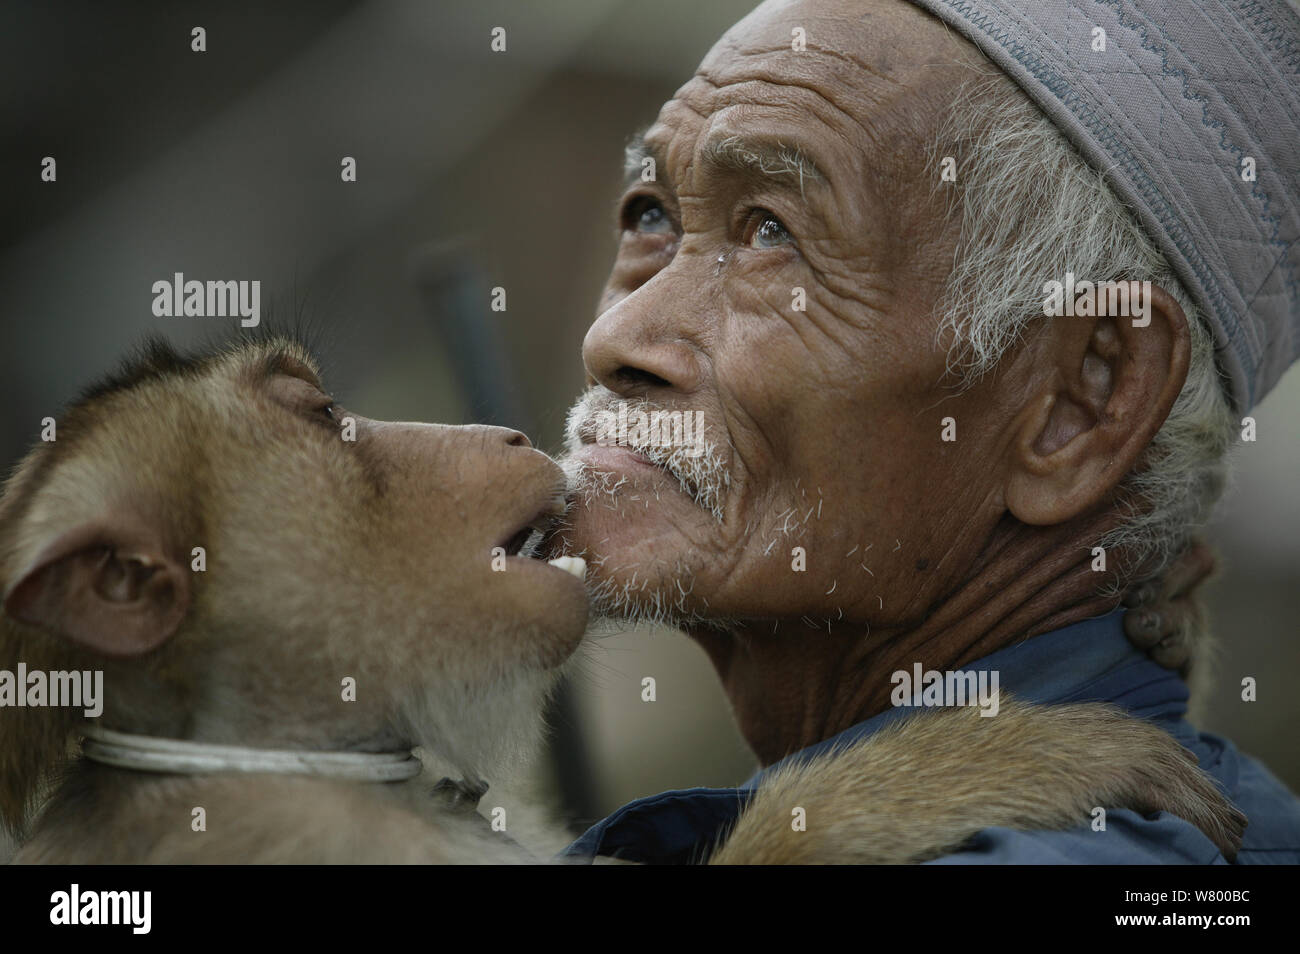 Southern pig-coda Macaque (Macaca nemestrina) addestrate per raccogliere le noci di cocco, proprietario di toelettatura, Malaysia. Foto Stock